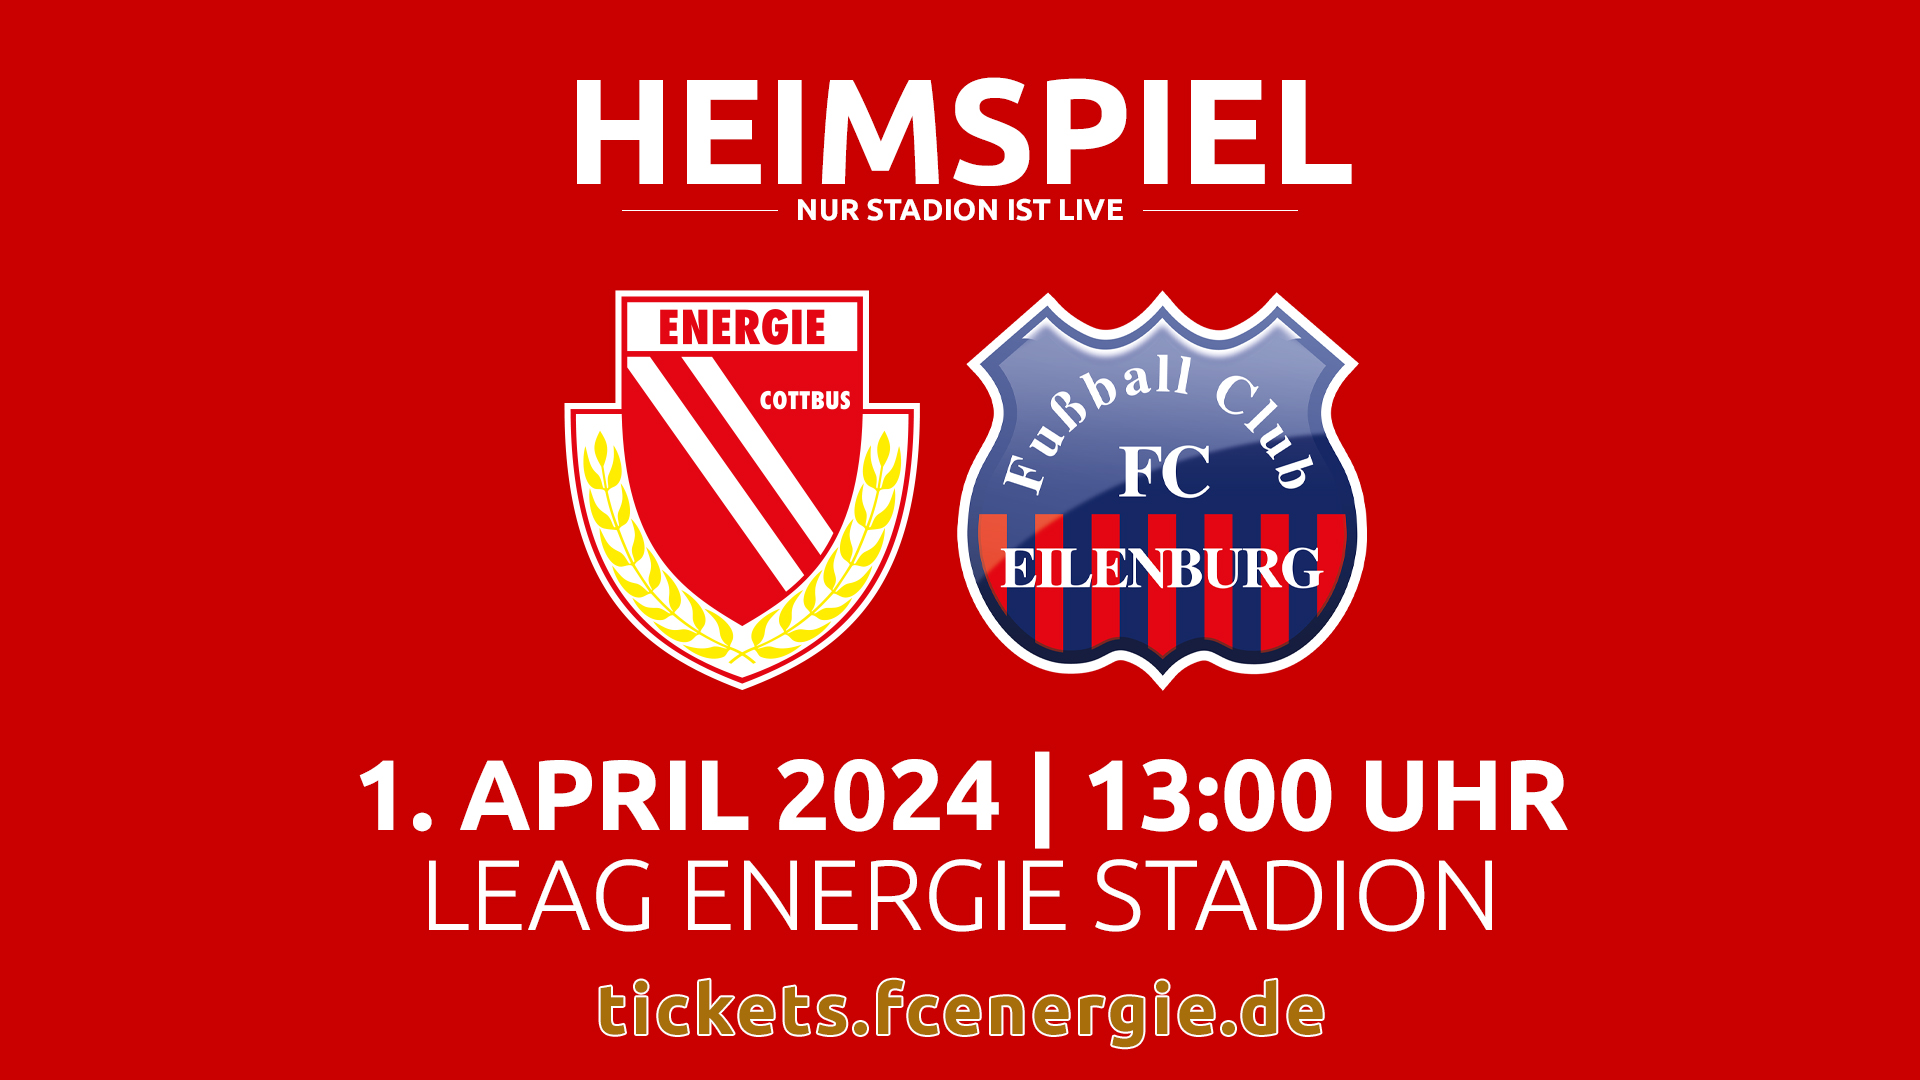 Tickets für das Spiel FC Energie Cottbus - FC Eielenburg